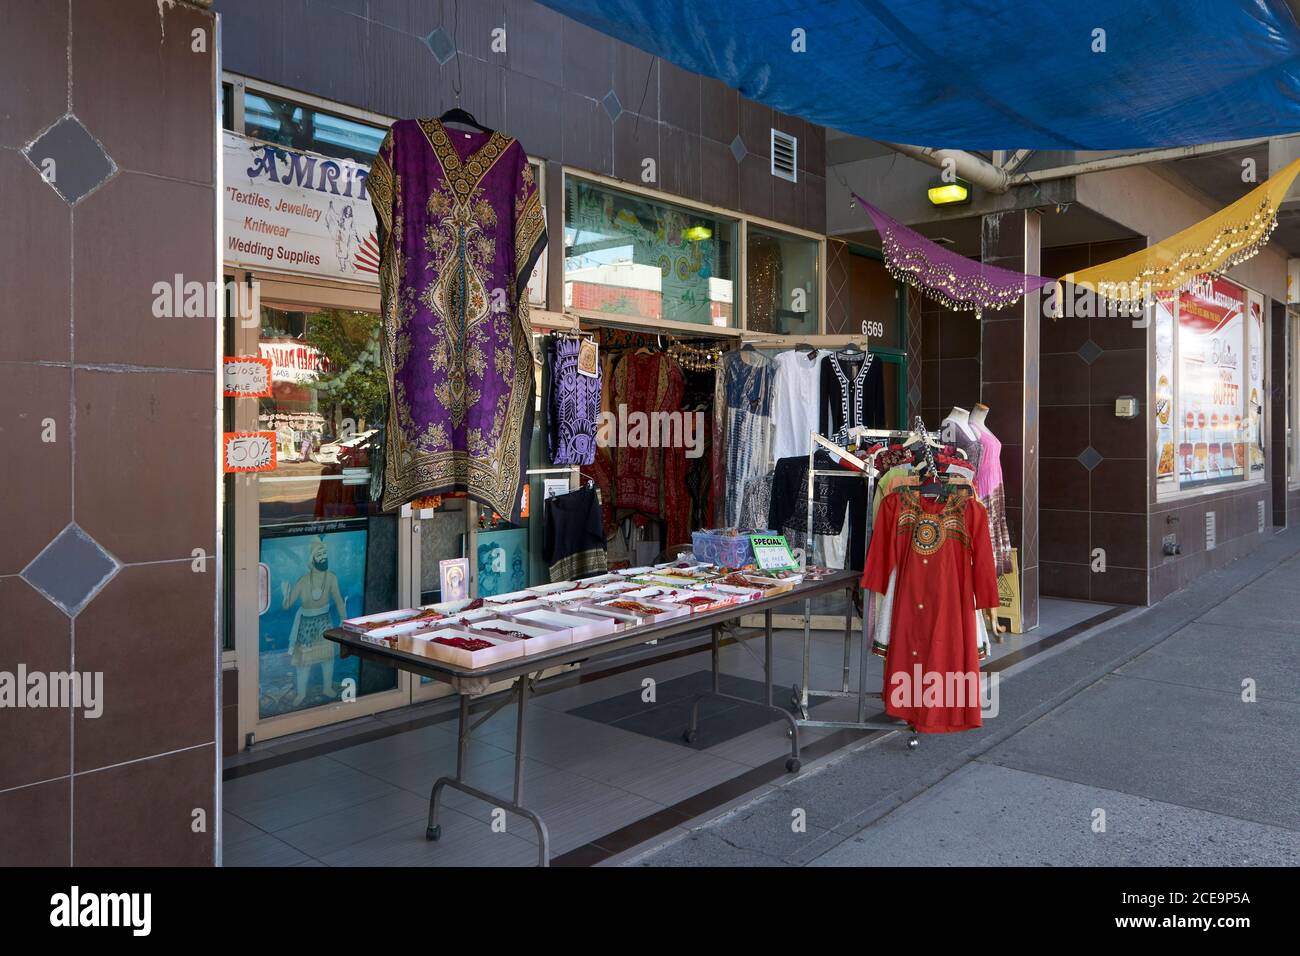 Vêtements pour femmes à l'extérieur d'une boutique de vêtements indienne dans le quartier du marché Punjabi, rue main, Vancouver, C.-B., Canada Banque D'Images